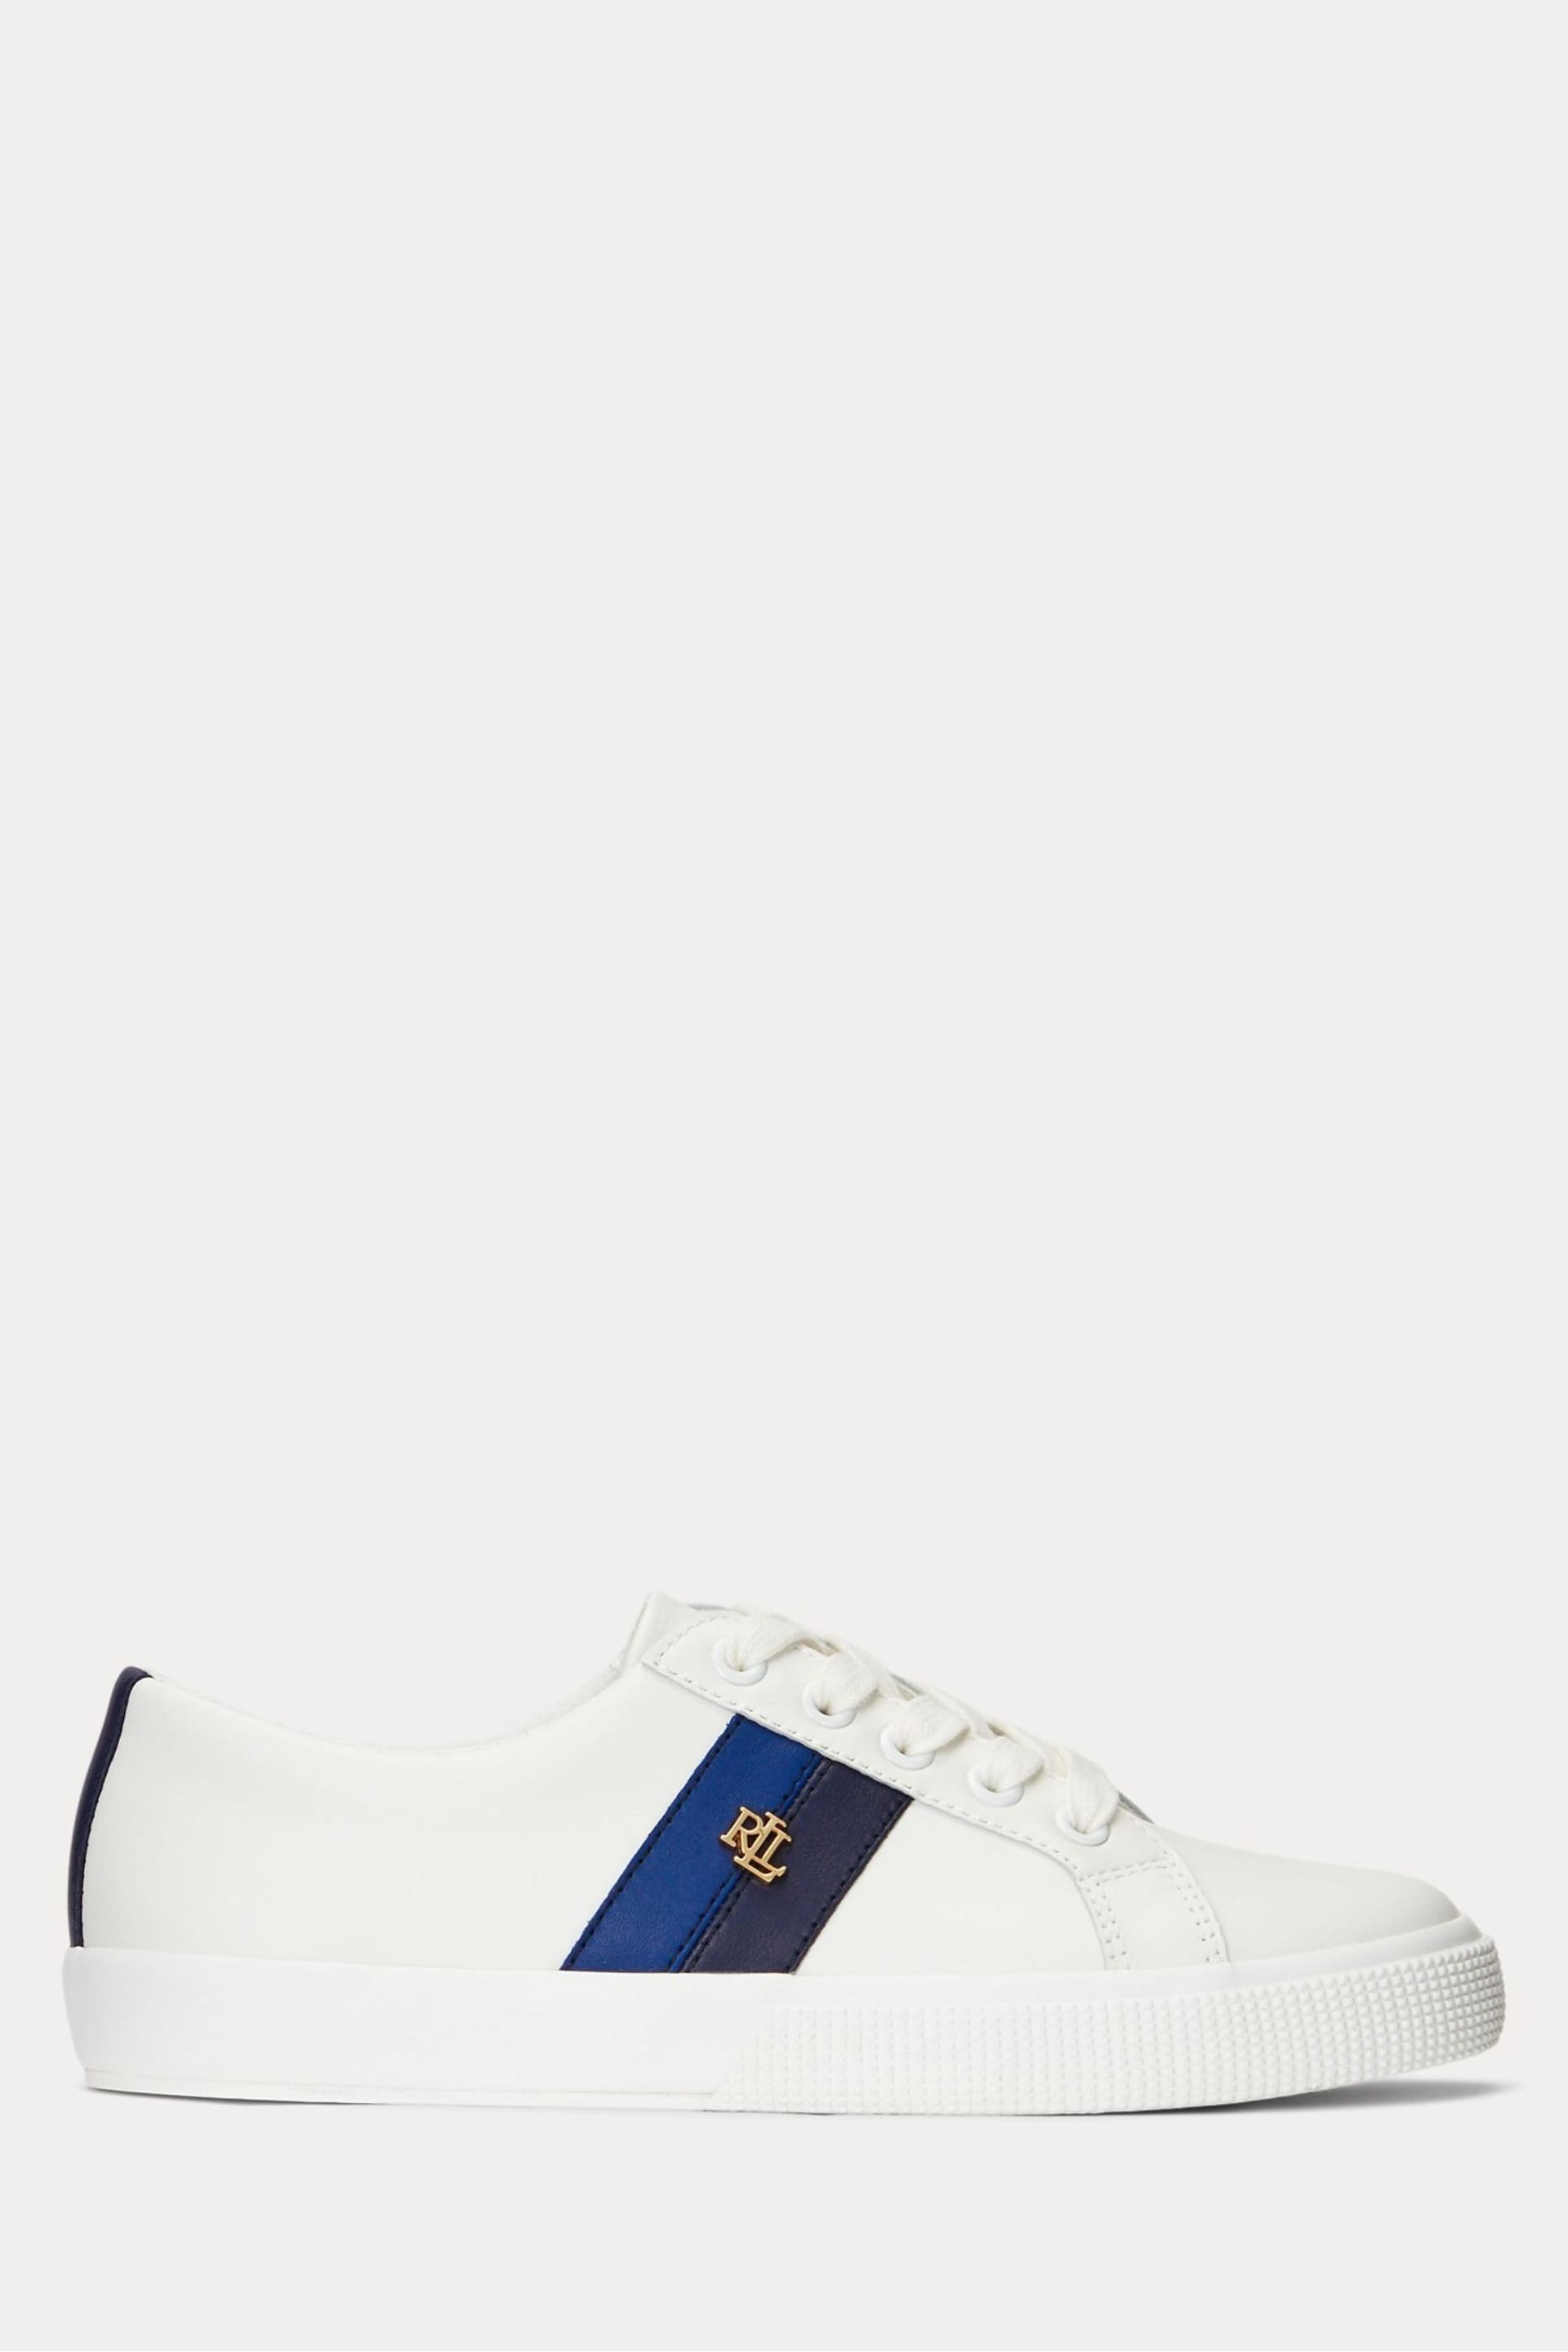 Lauren Ralph Lauren Janson II Leather White Sneakers - Image 1 of 4